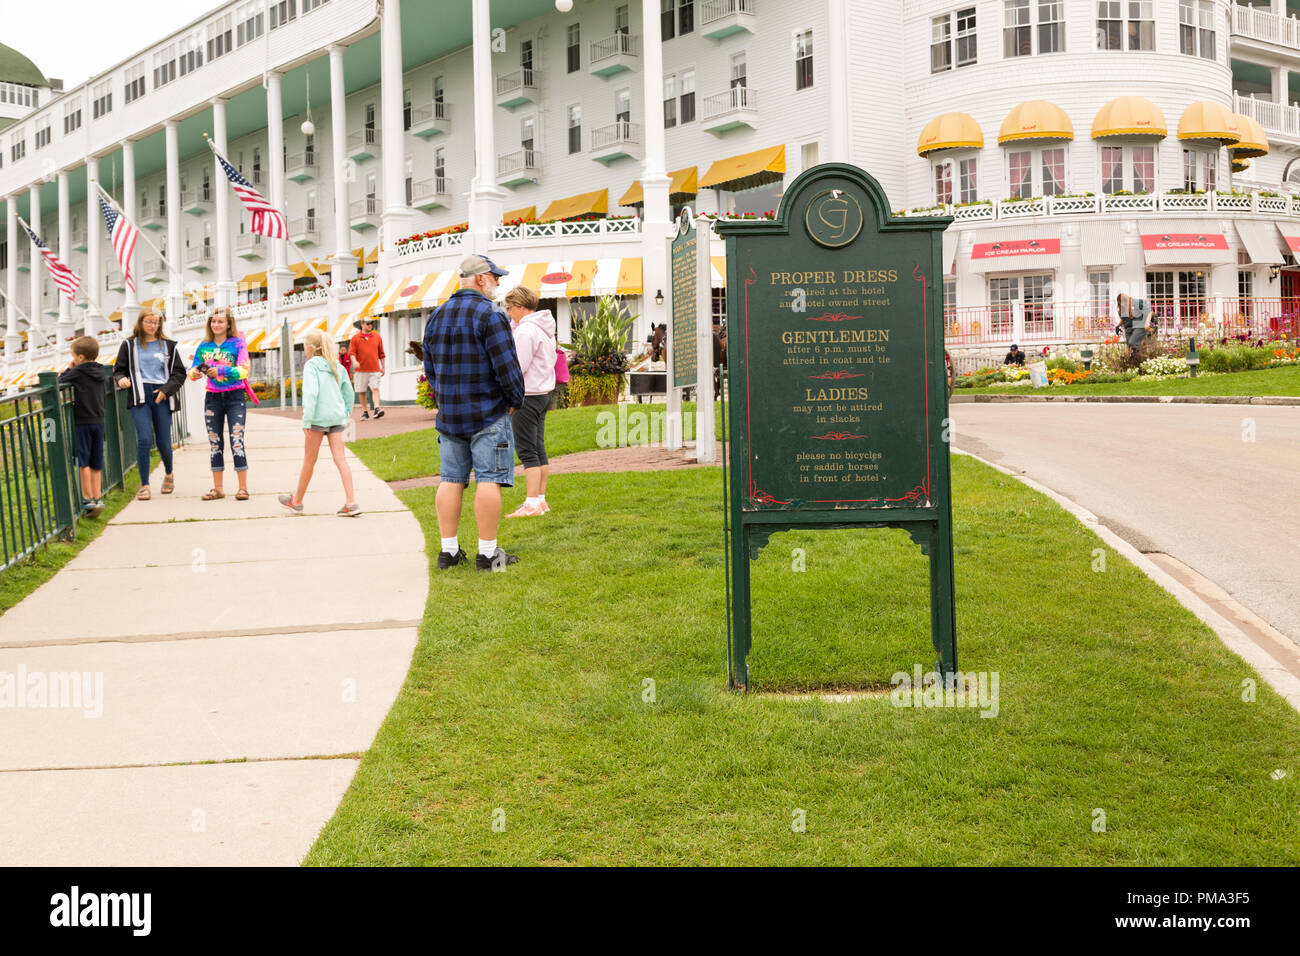 Cartel exterior con las reglas del código de vestimenta adecuada, frente al Grand Hotel Resort en Mackinac Island, Michigan. Los turistas alrededor se visten casual. Foto de stock